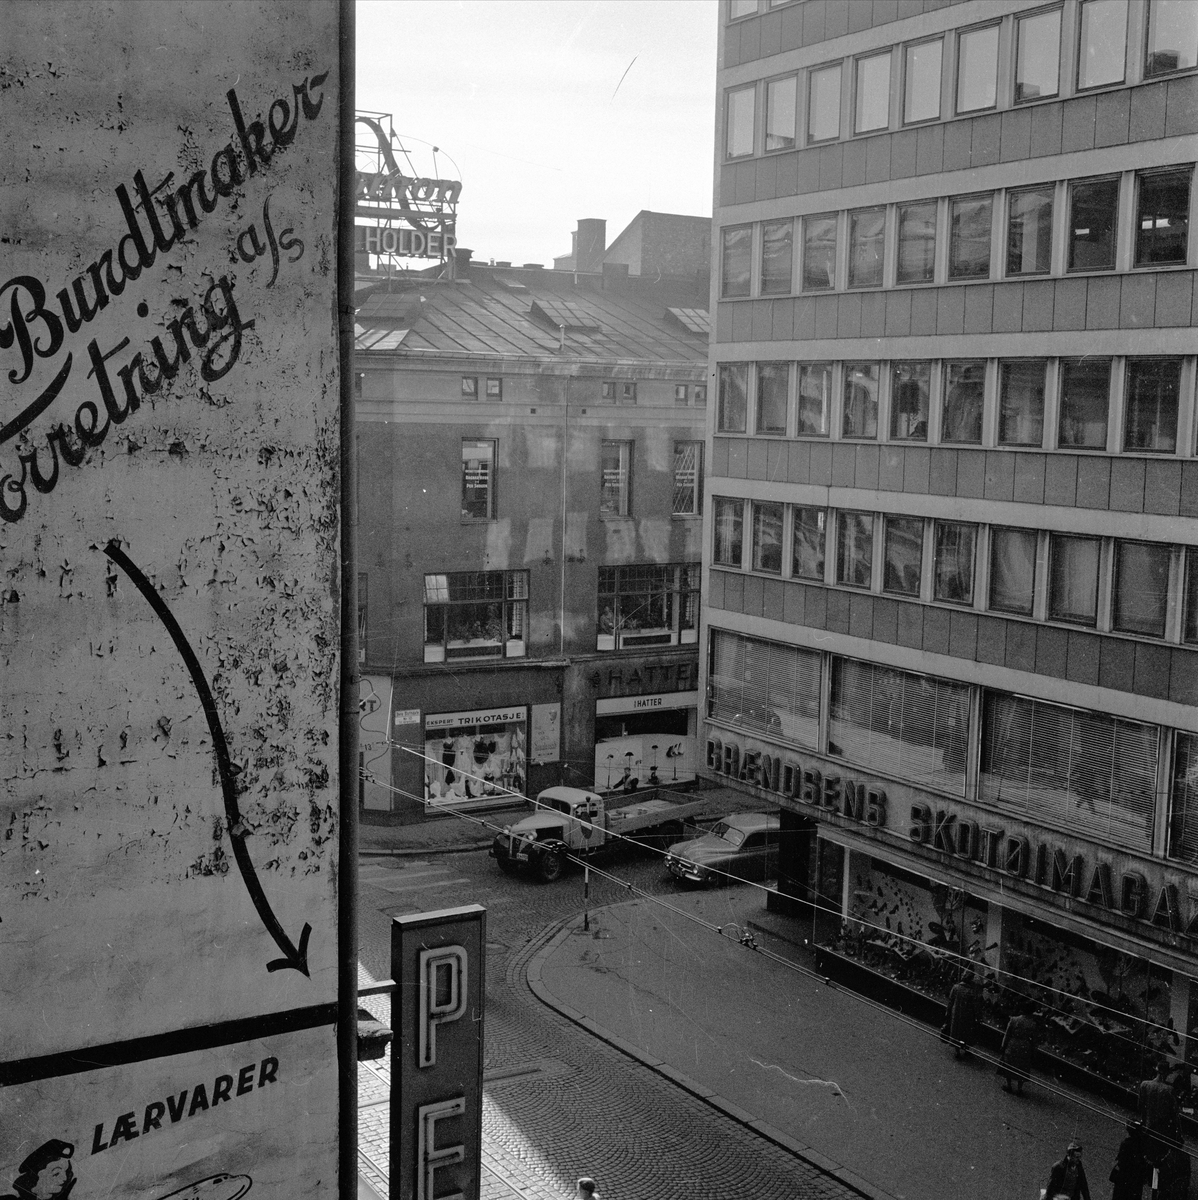 Grændsens Skotøimagasin i Grensen 12 i Oslo. September 1955. Bygate med bygårder og trafikk.